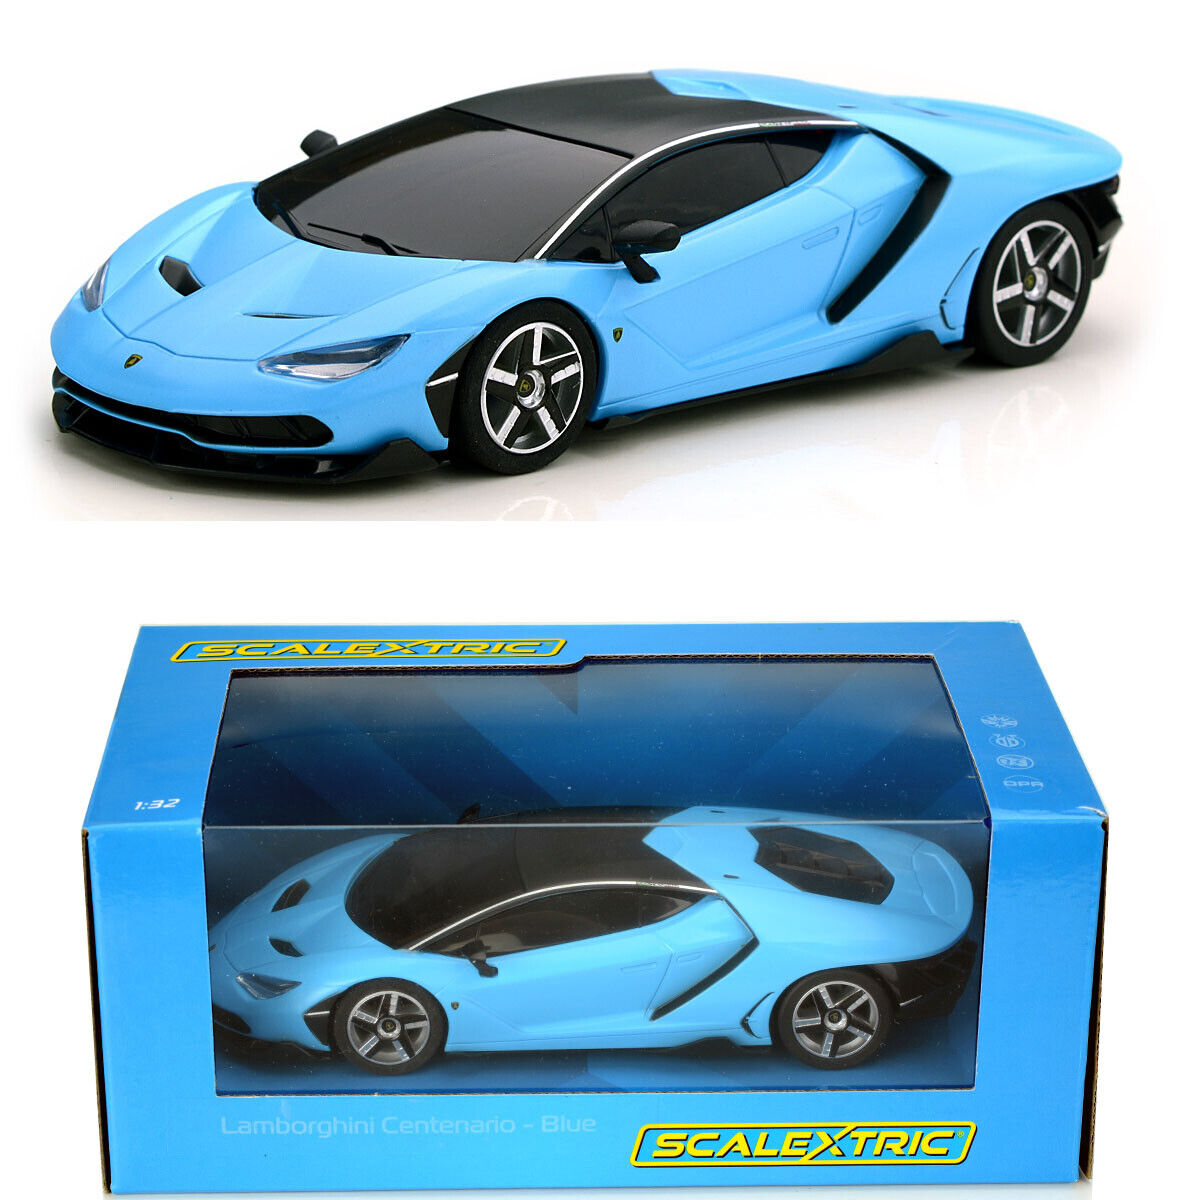 Product Image - Scalextric C4312 - Lamborghini Centenario - Blue Slot Car 1:32 Scale